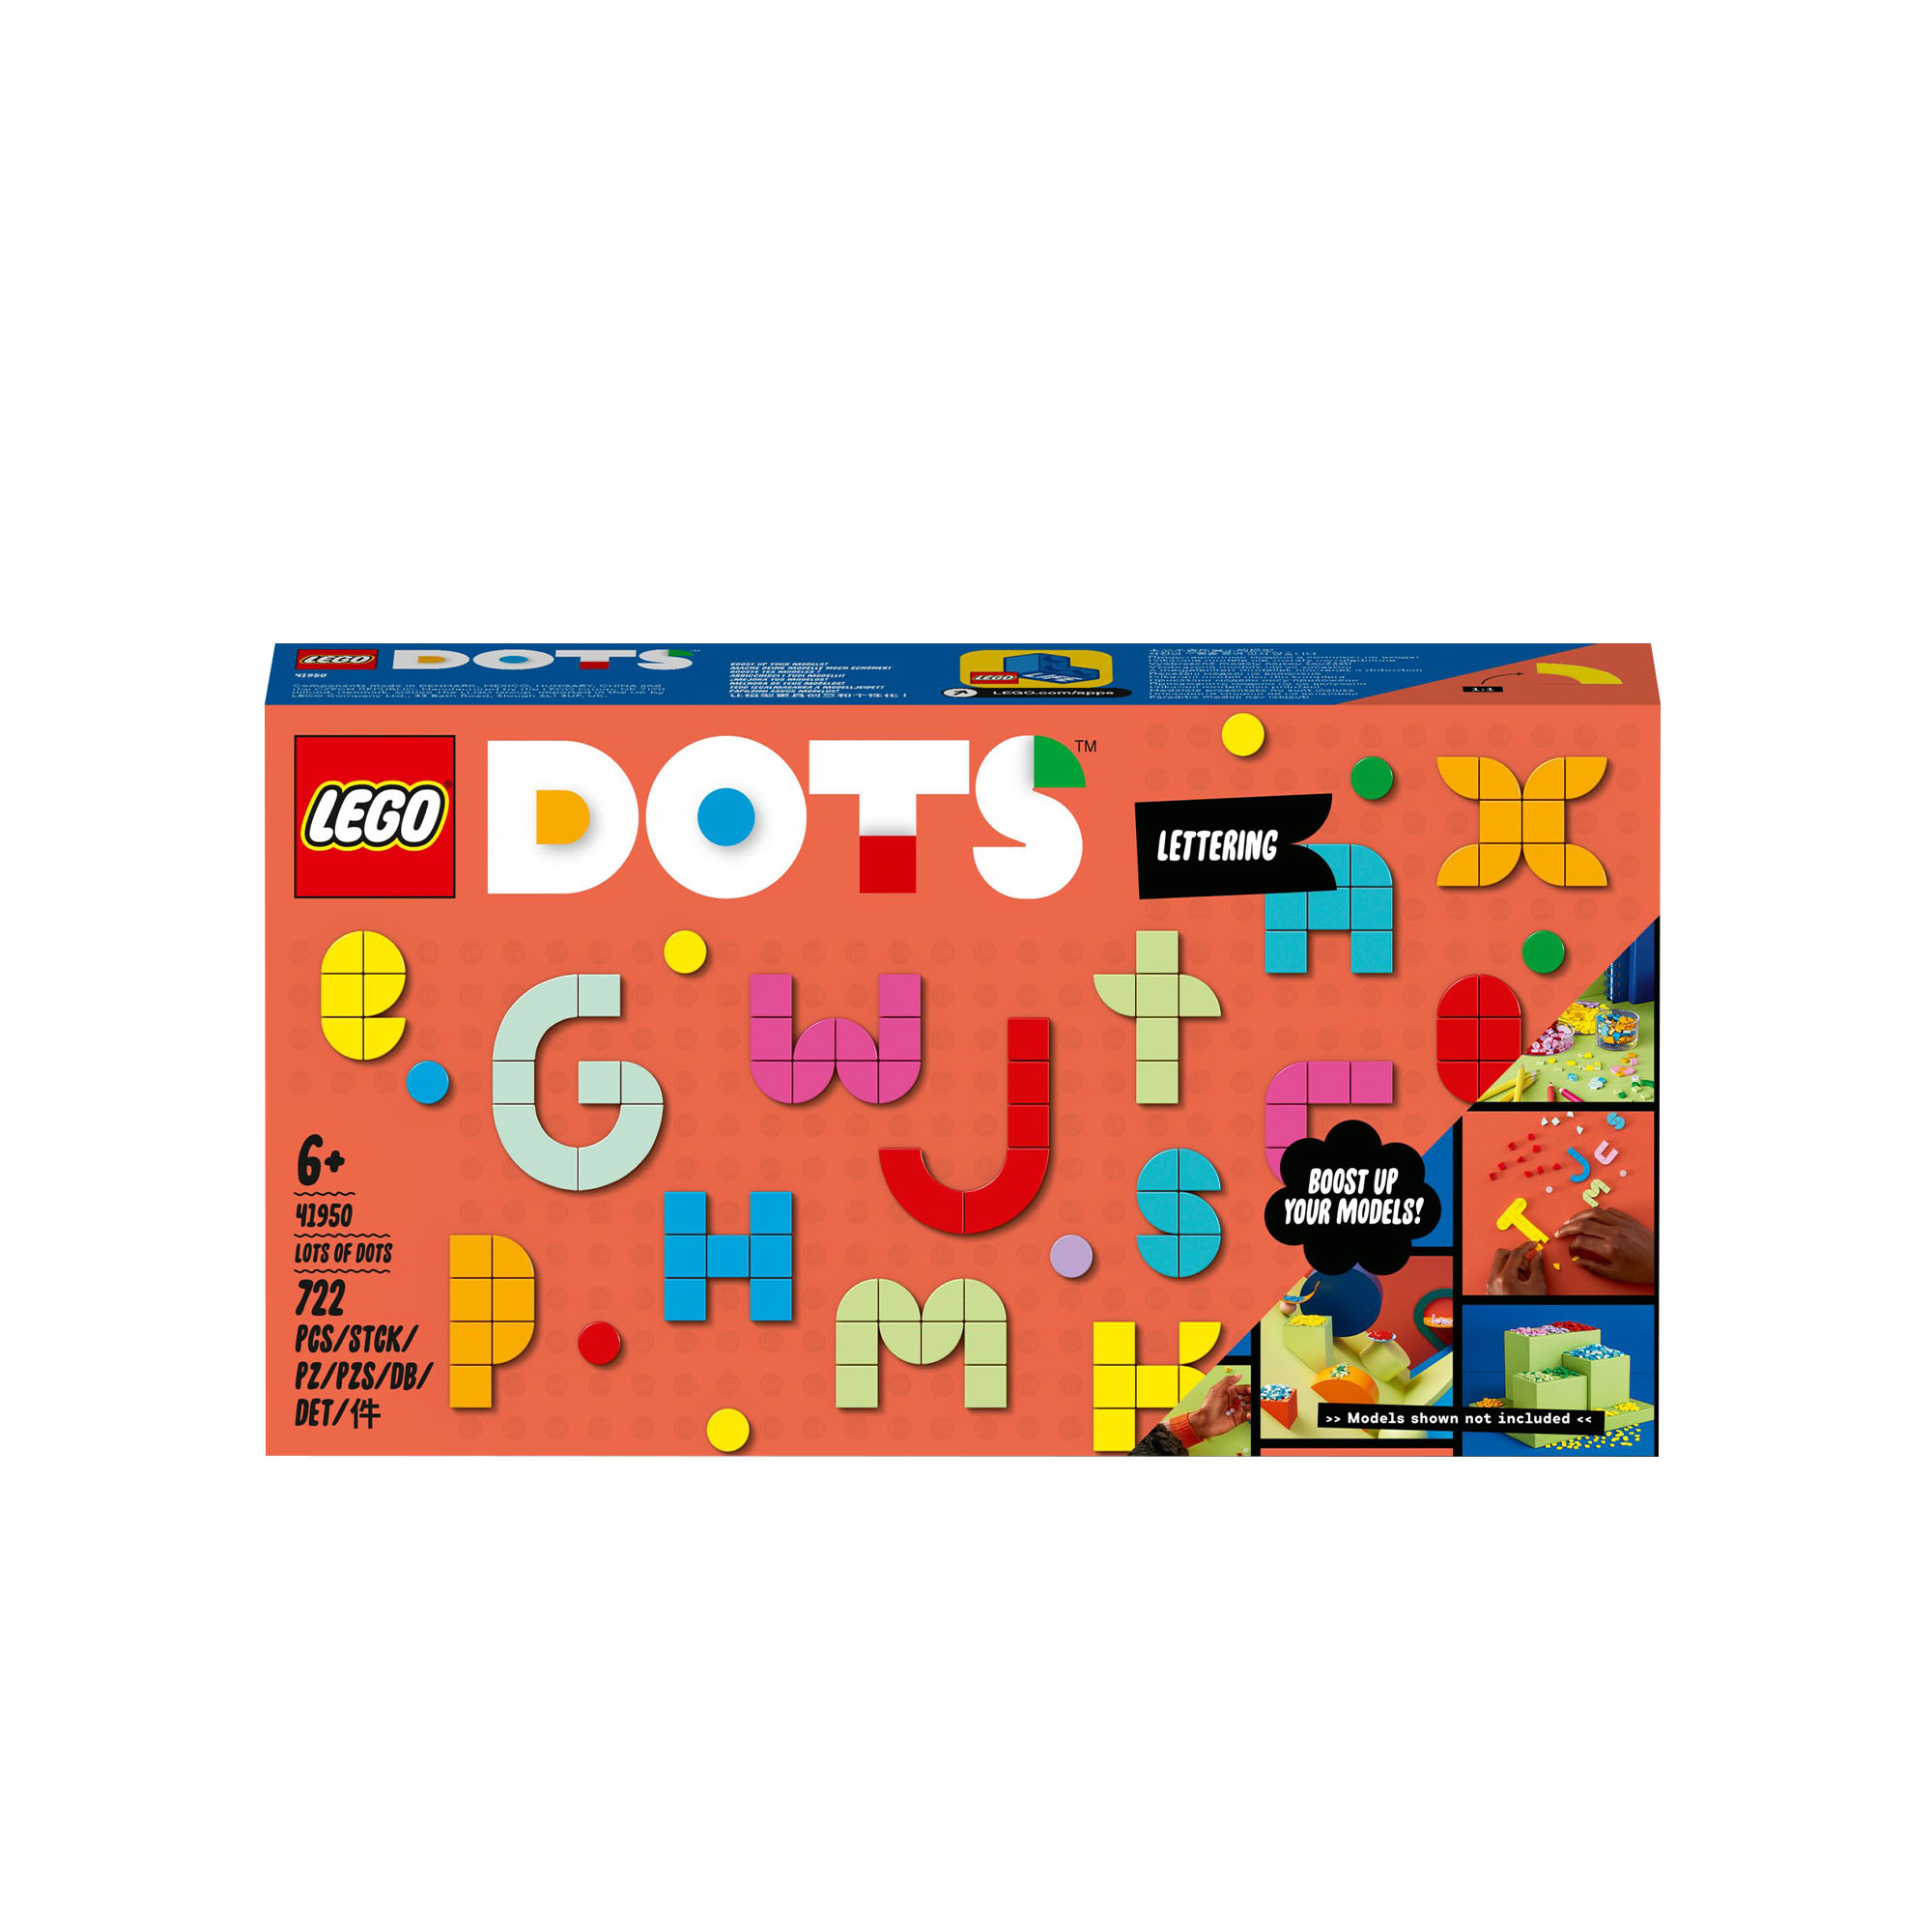 LEGO DOTS MEGA PACK - Lettere e Caratteri, Giochi per Bambini dai 6 Anni in su,  41950, , large